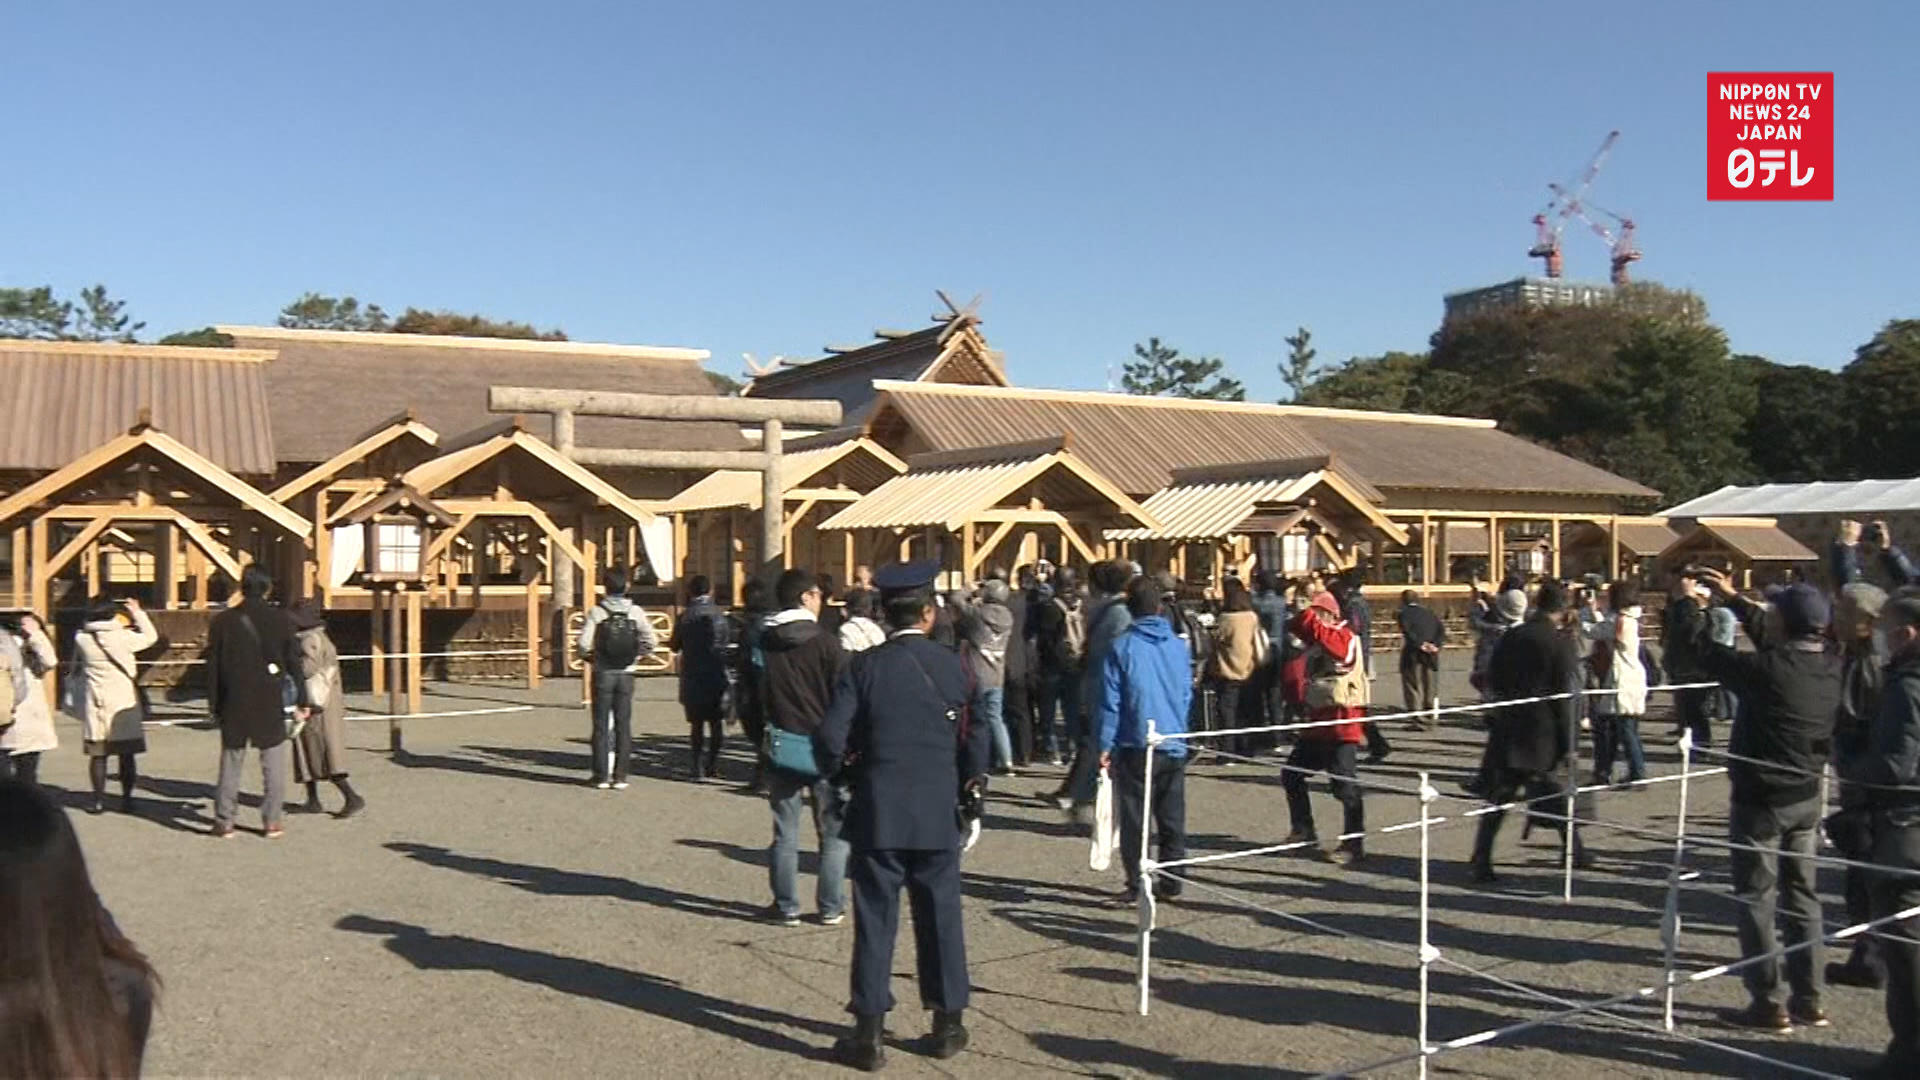 Daijosai imperial succession rite venue open to public